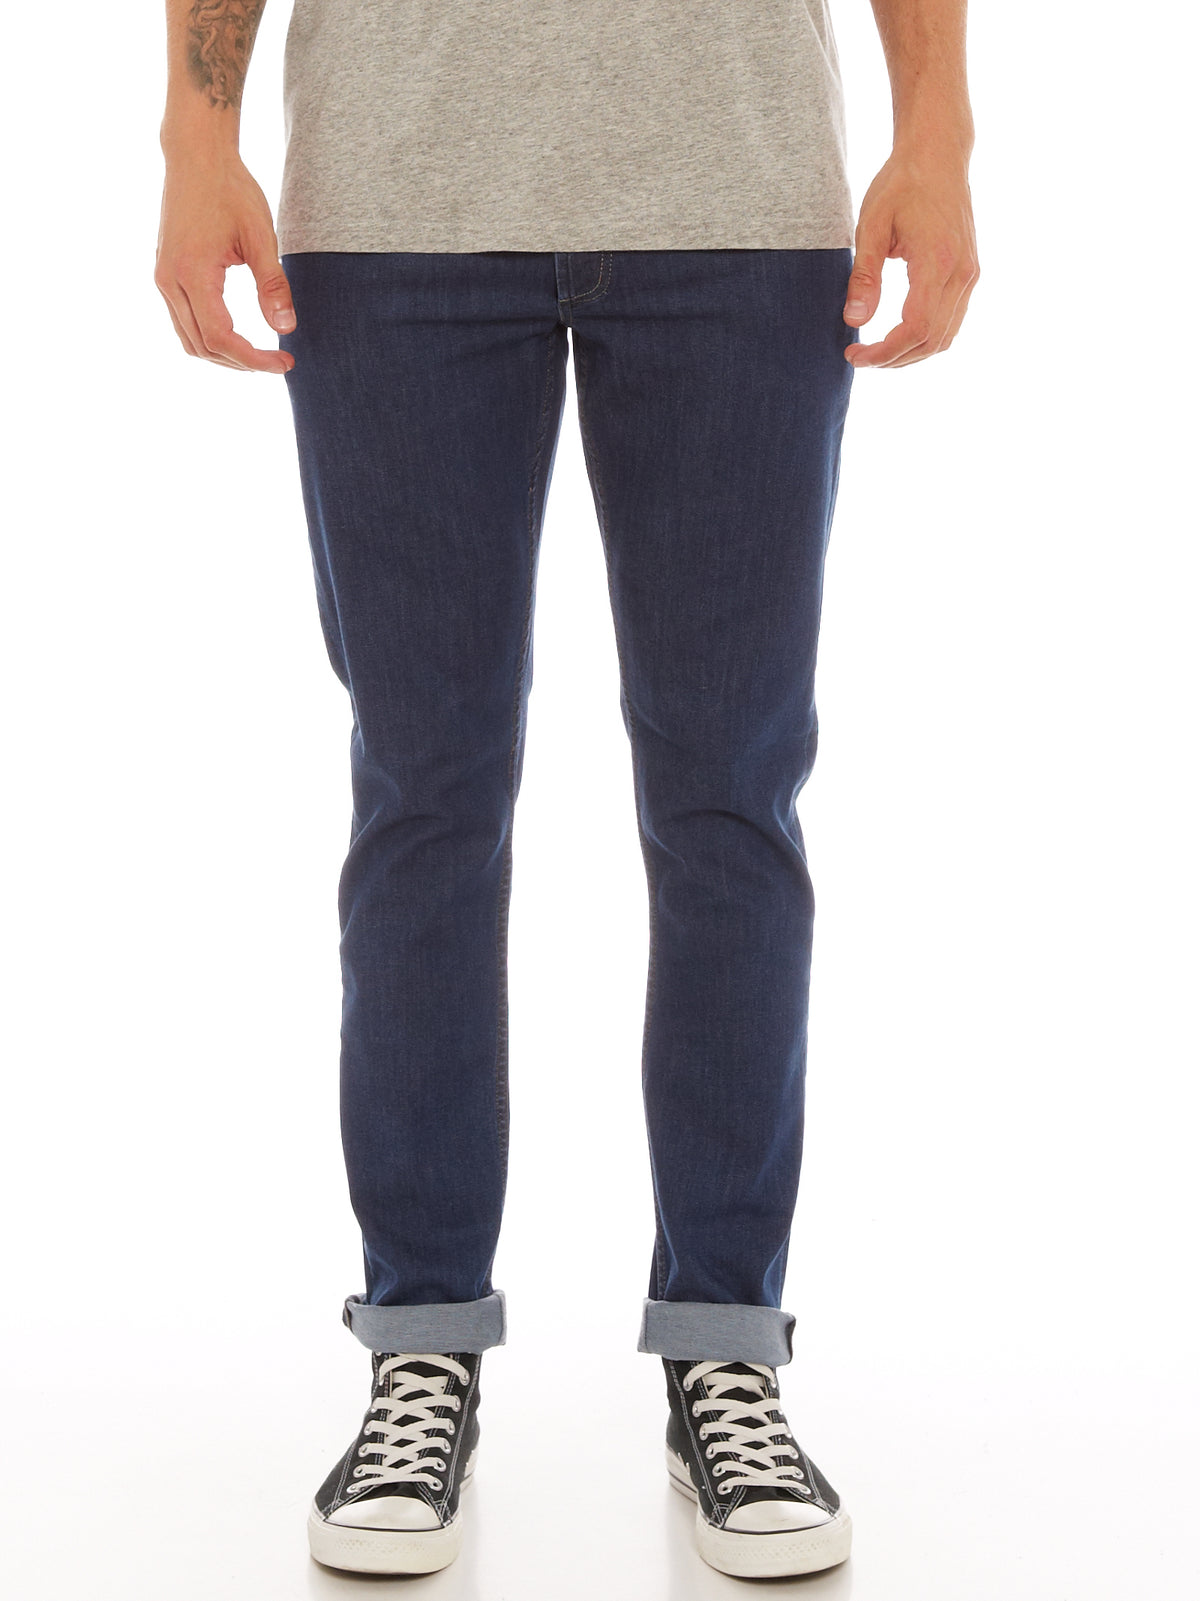 Razor Slim Straight Jeans in ICF Blue Denim